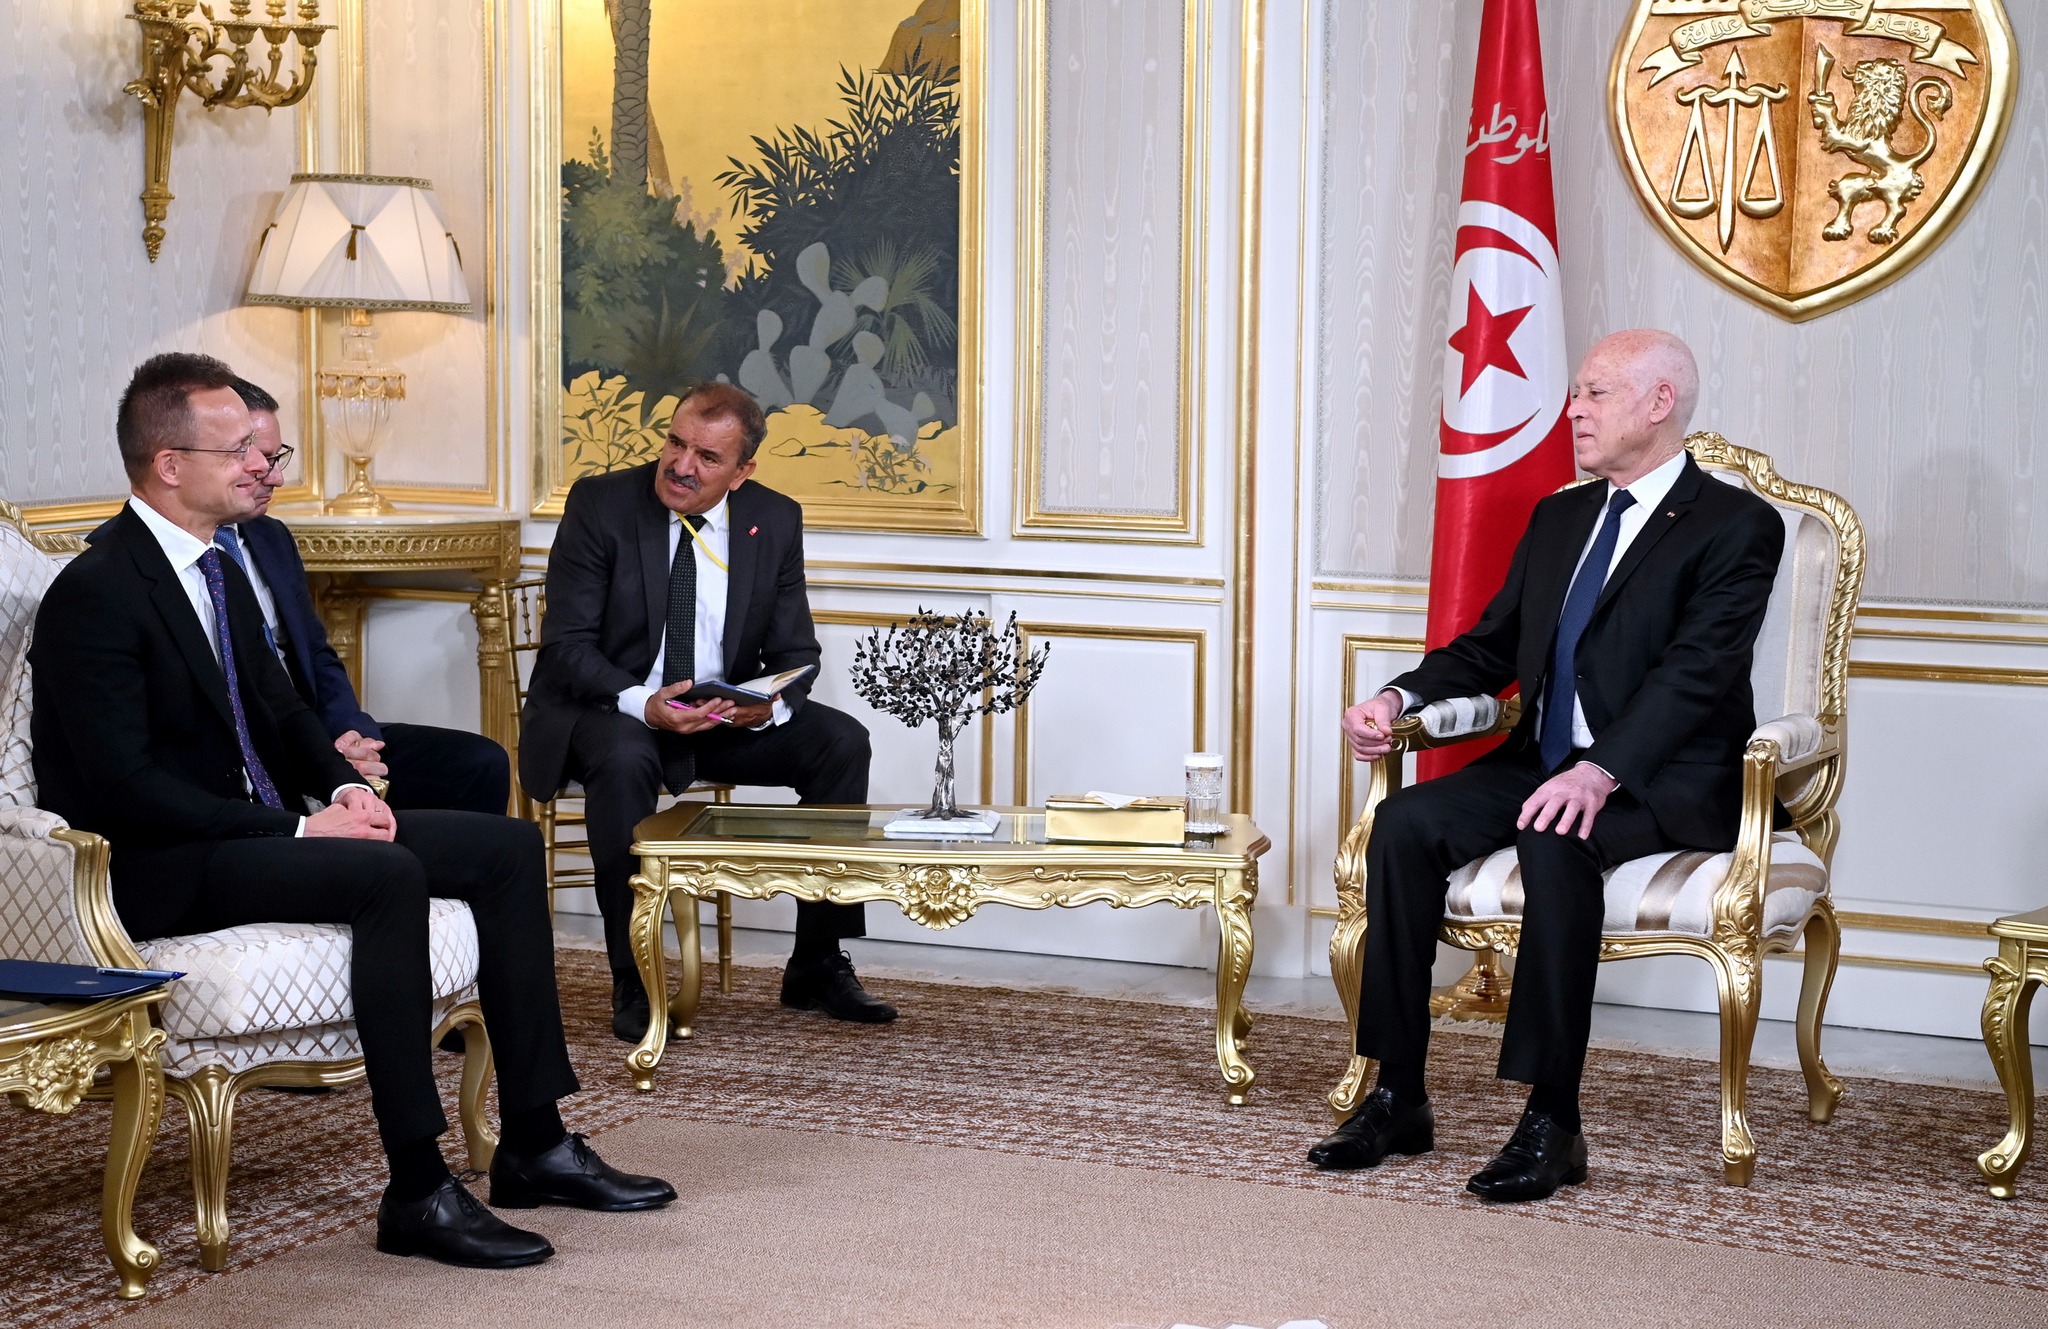 خلال لقائه وزير الشؤون الخارجية المجري/ سعيد: تونس بلد قانون ولا تقبل أن يقيم على أراضيها من هو خارج عن القانون